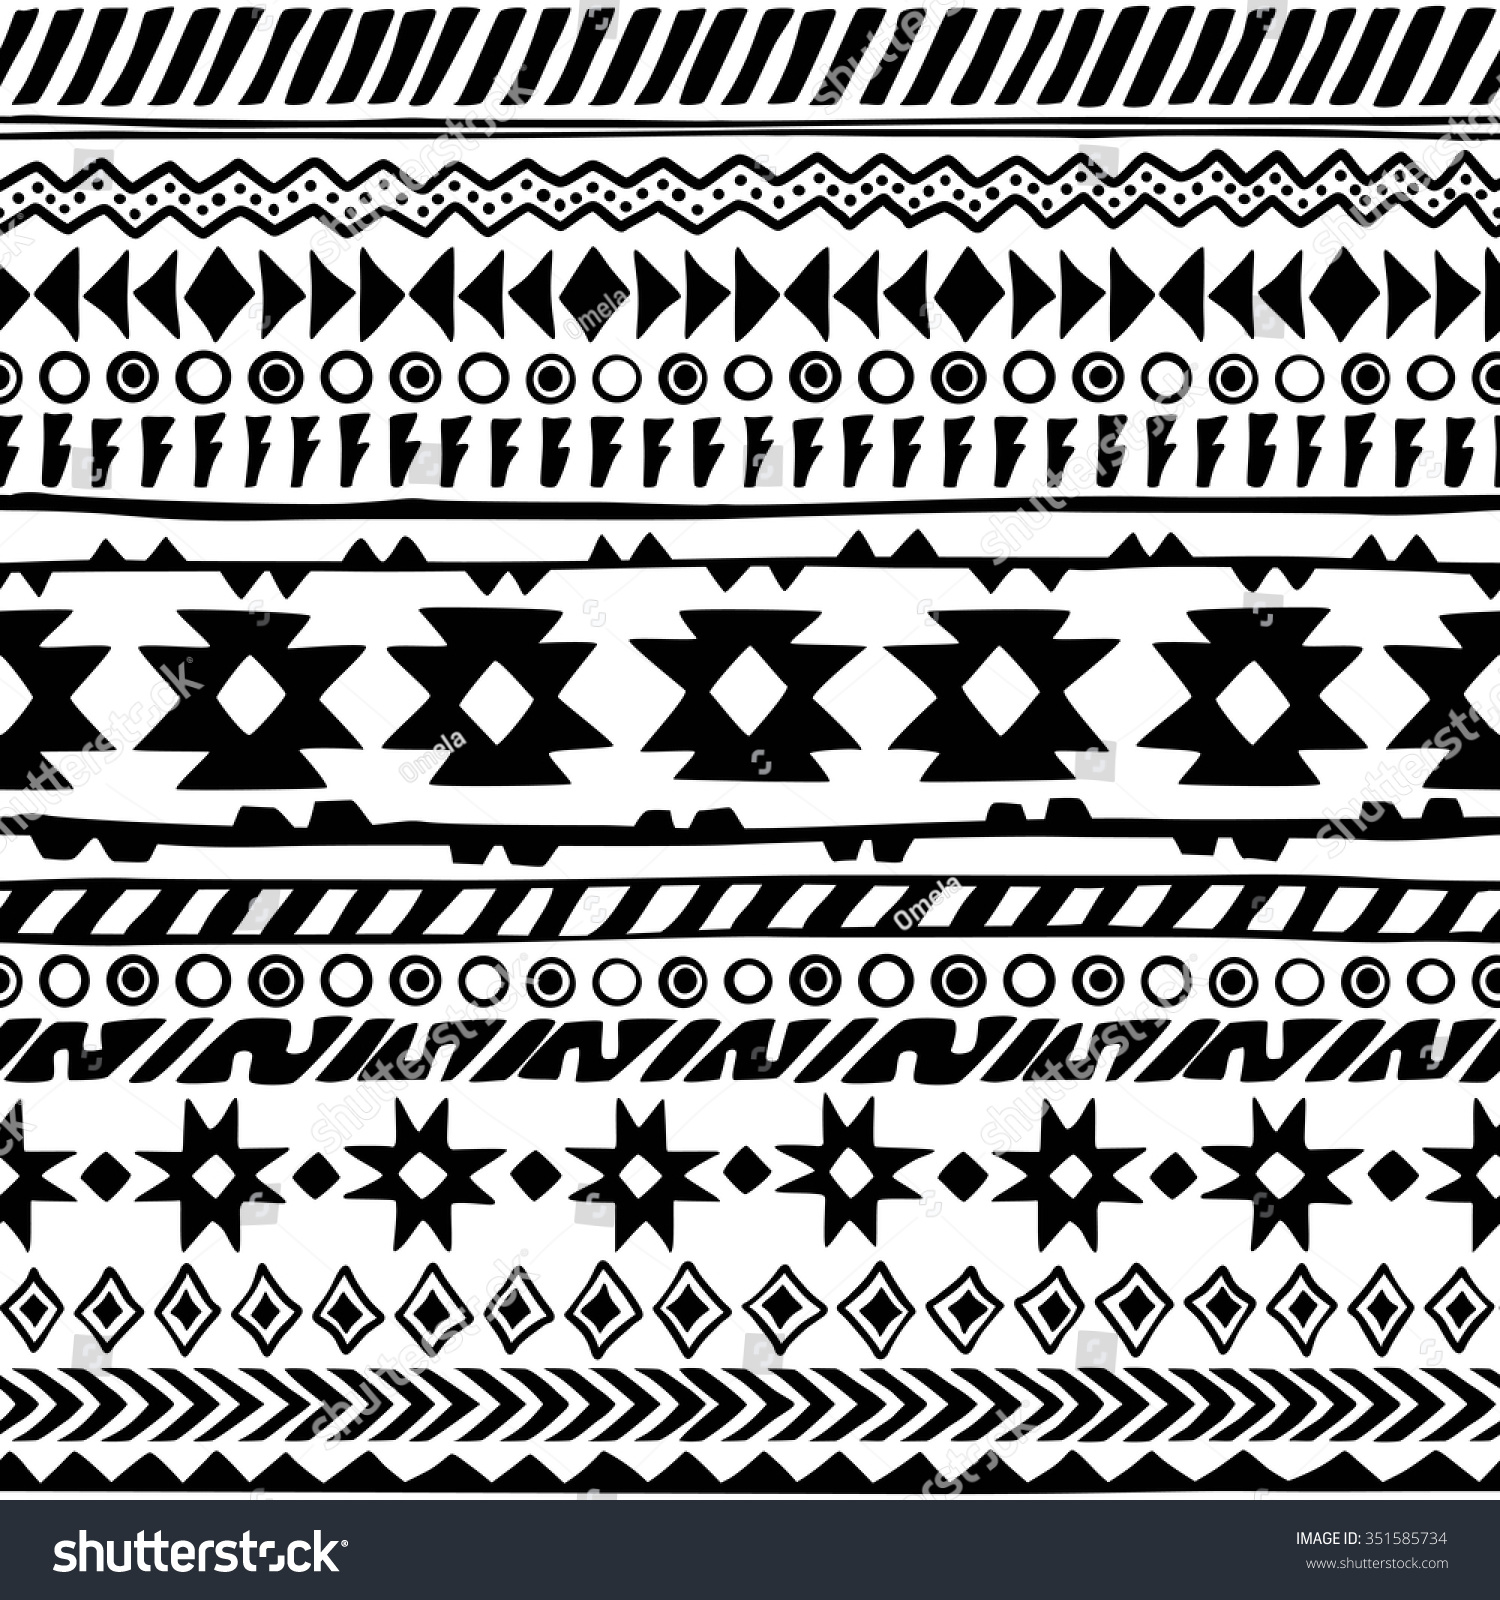 Seamless Handdrawn Aztec Pattern Vector Illustration Stock Vector ...